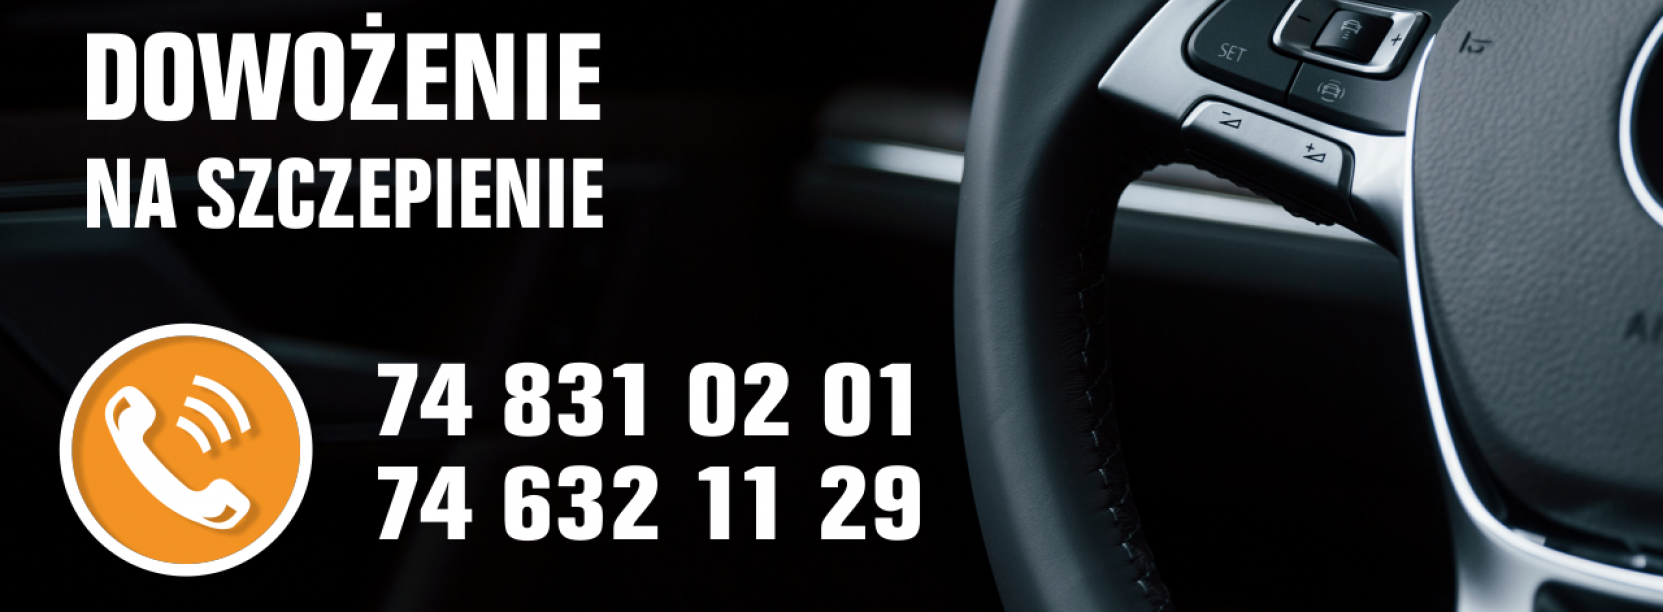 Zdjęcie kierownicy samochodu i numery telefonów podane w informacji